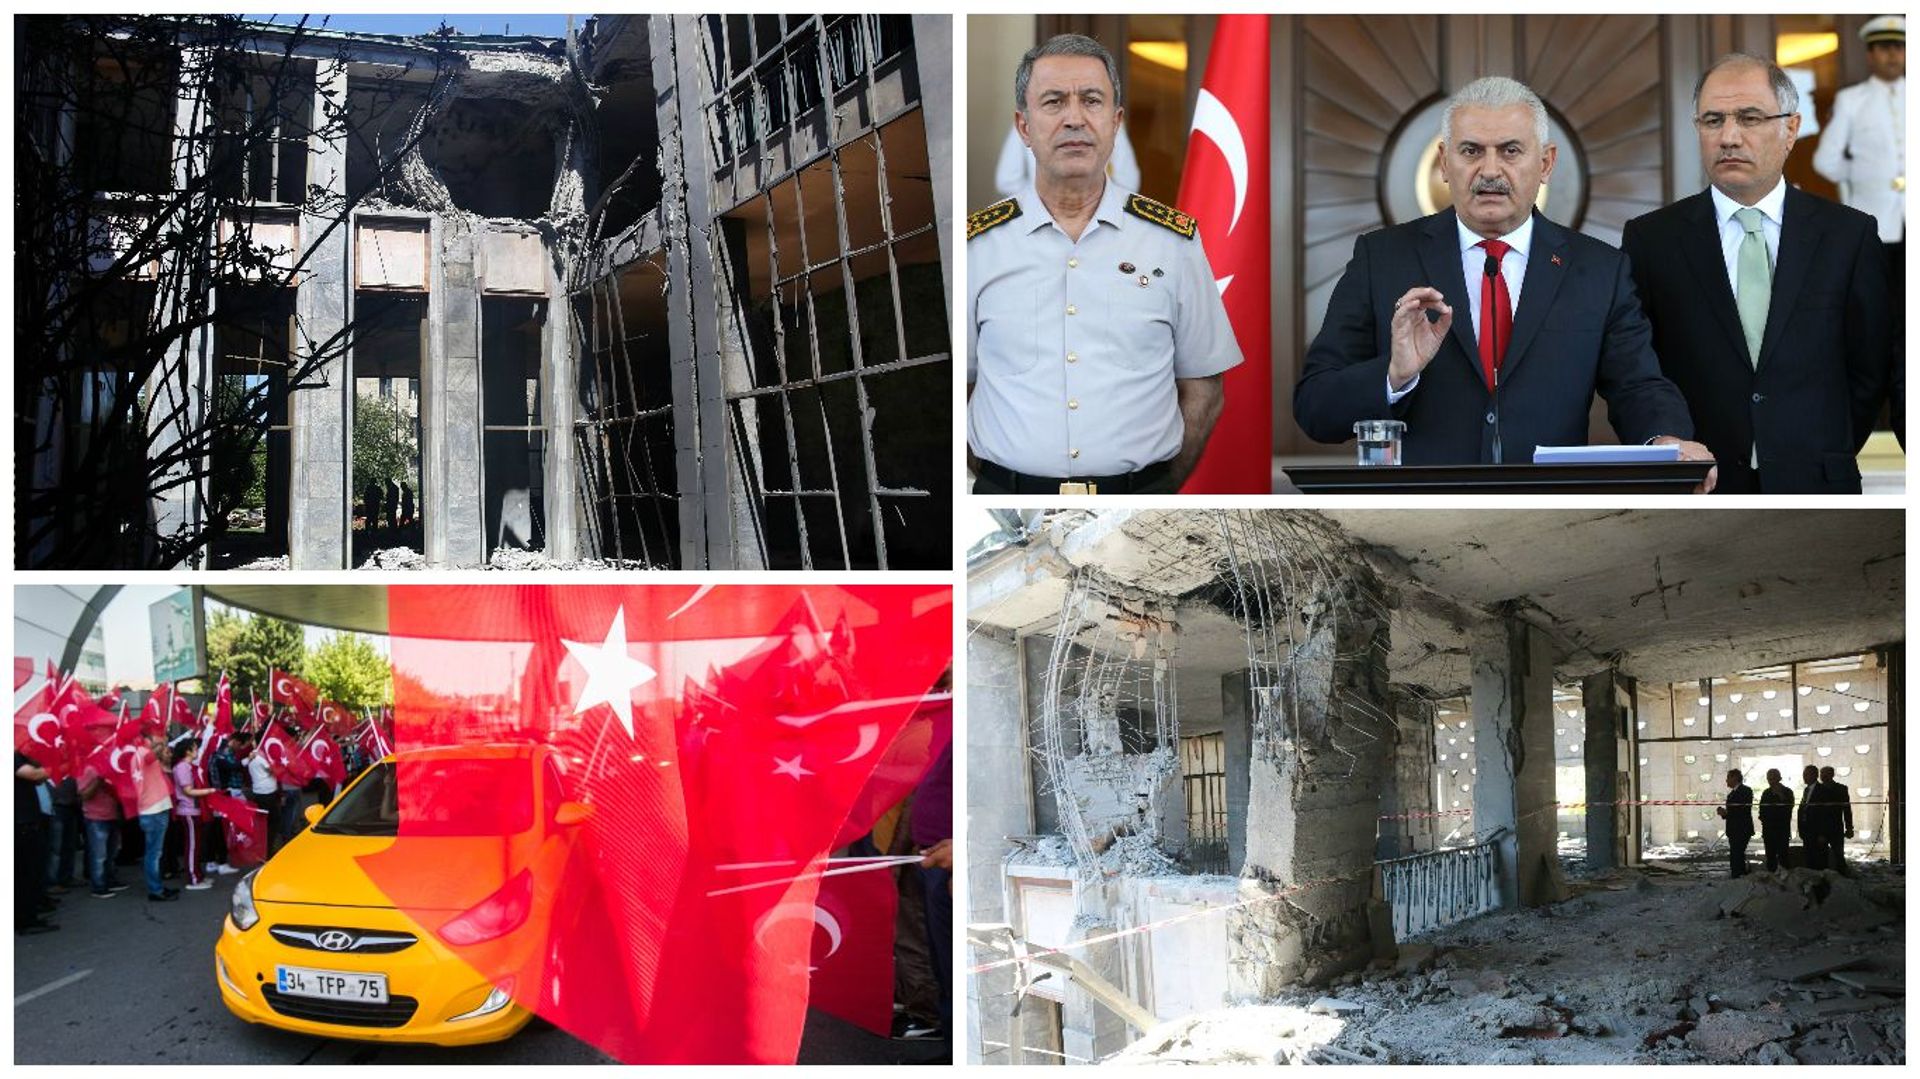 Le Premier ministre (photo) doit maintenant reconstruire le bâtiment de l'assemblée qui a été bombardé et aussi la société turque divisée.

